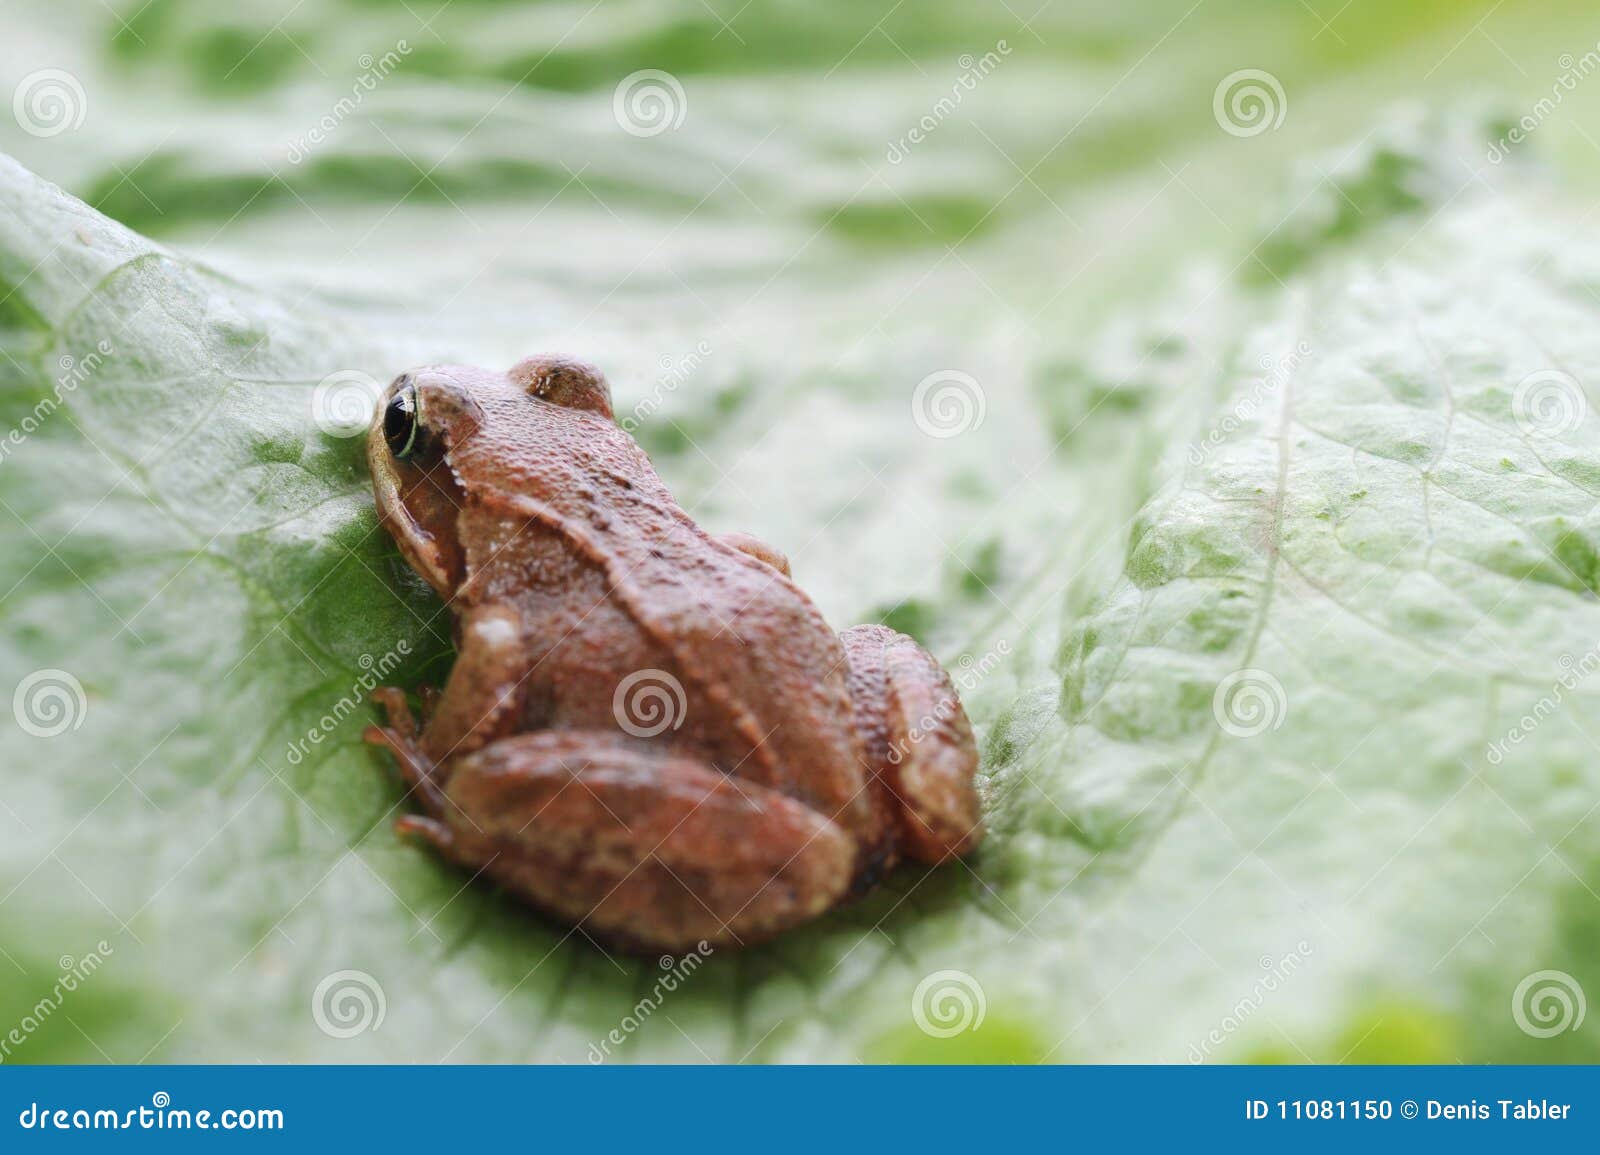 kleiner frosch sehr nah oben stockfoto  bild von bild